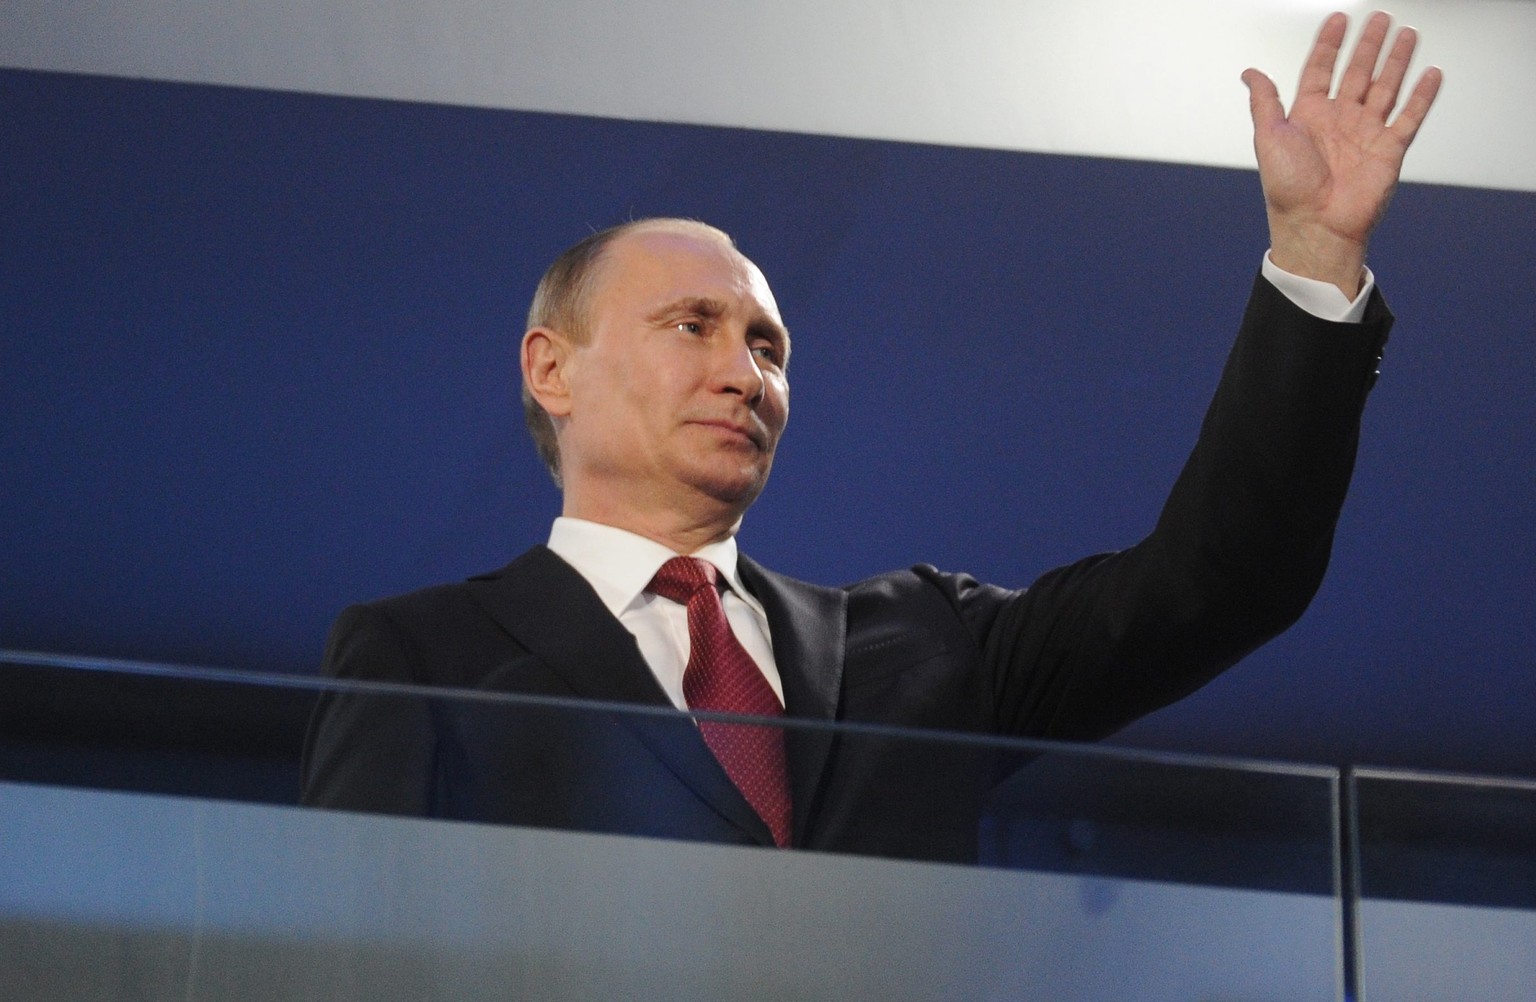 Wirtschaftssanktionen könnten ihm nicht ungelegen kommen: Der russische Präsident Putin.